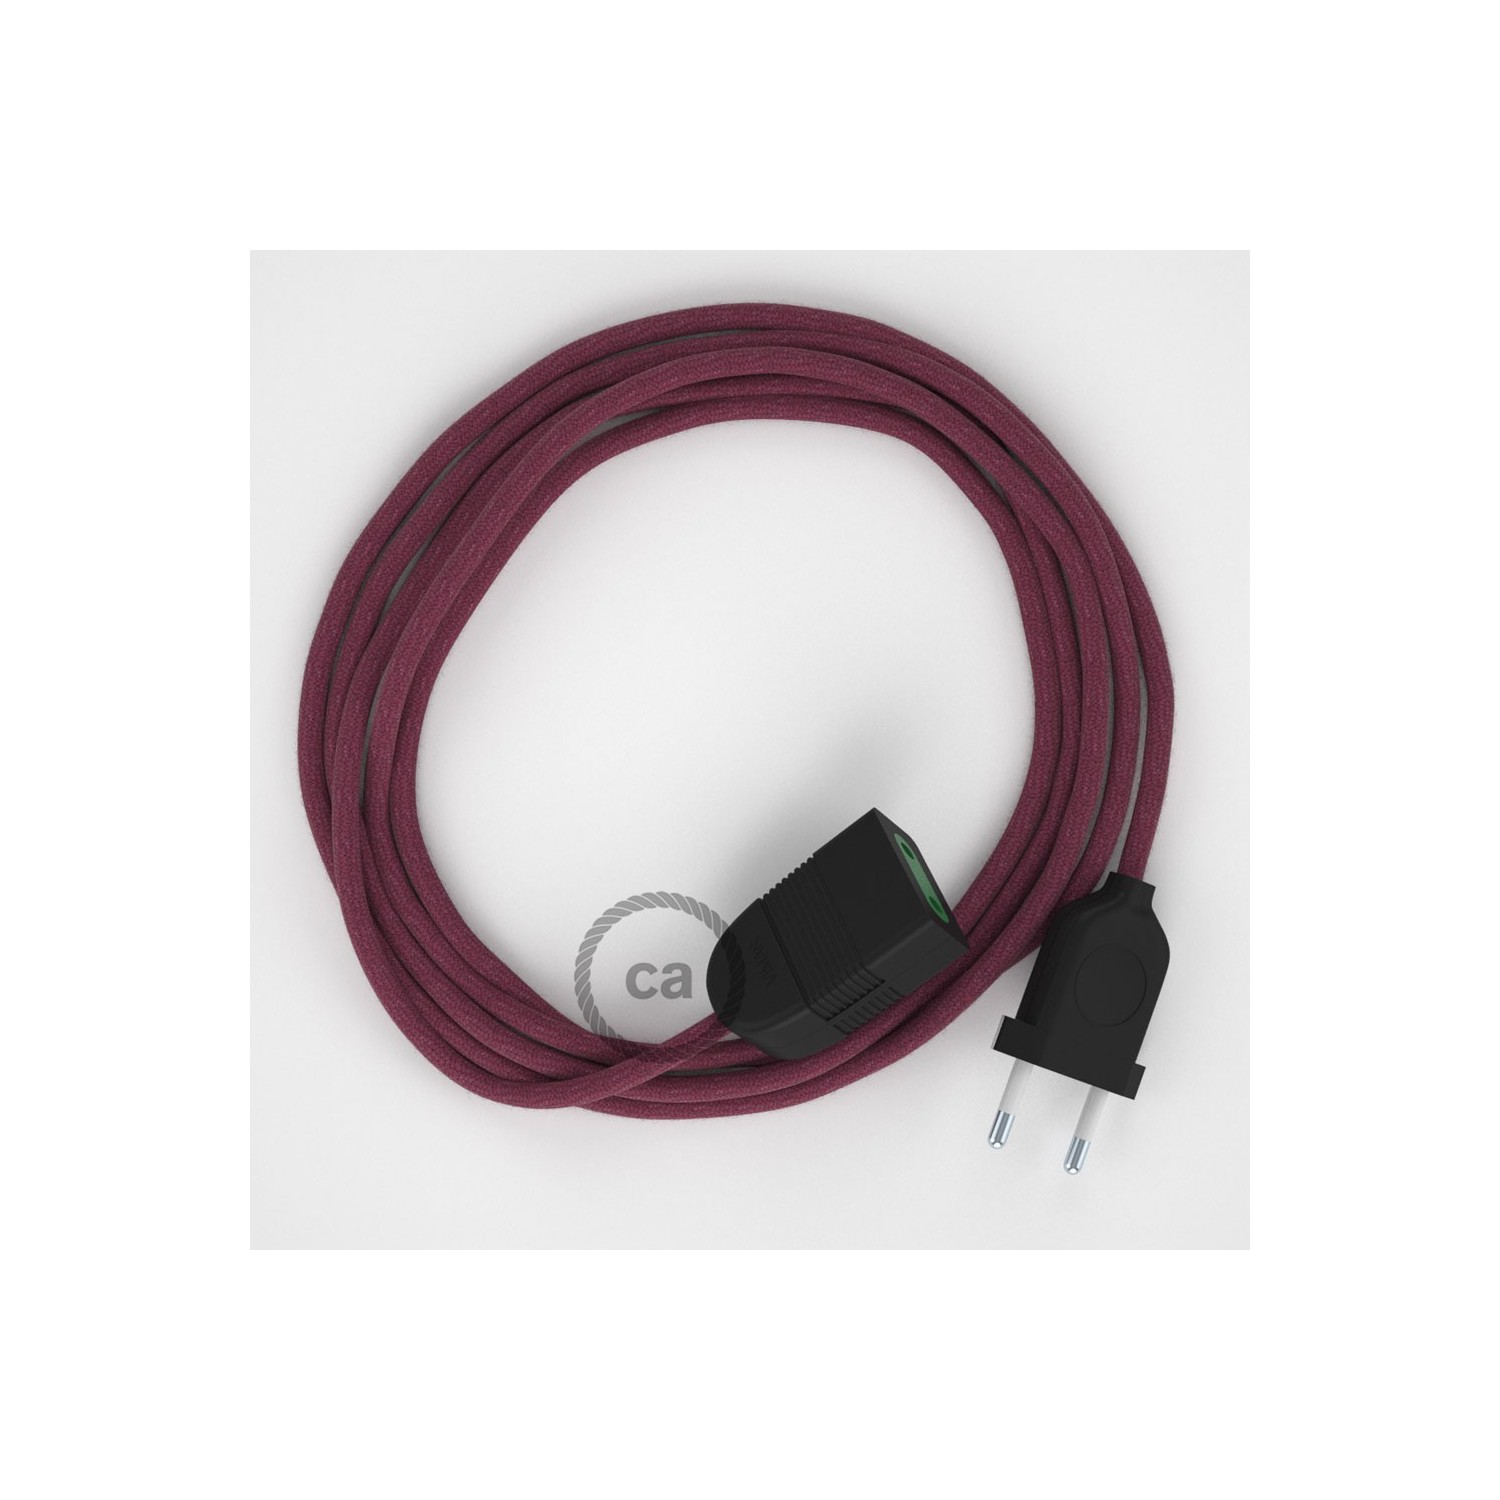 Verlengkabel 2P 10A met rond flexibel strijkijzersnoer RC32 van burgundy katoen